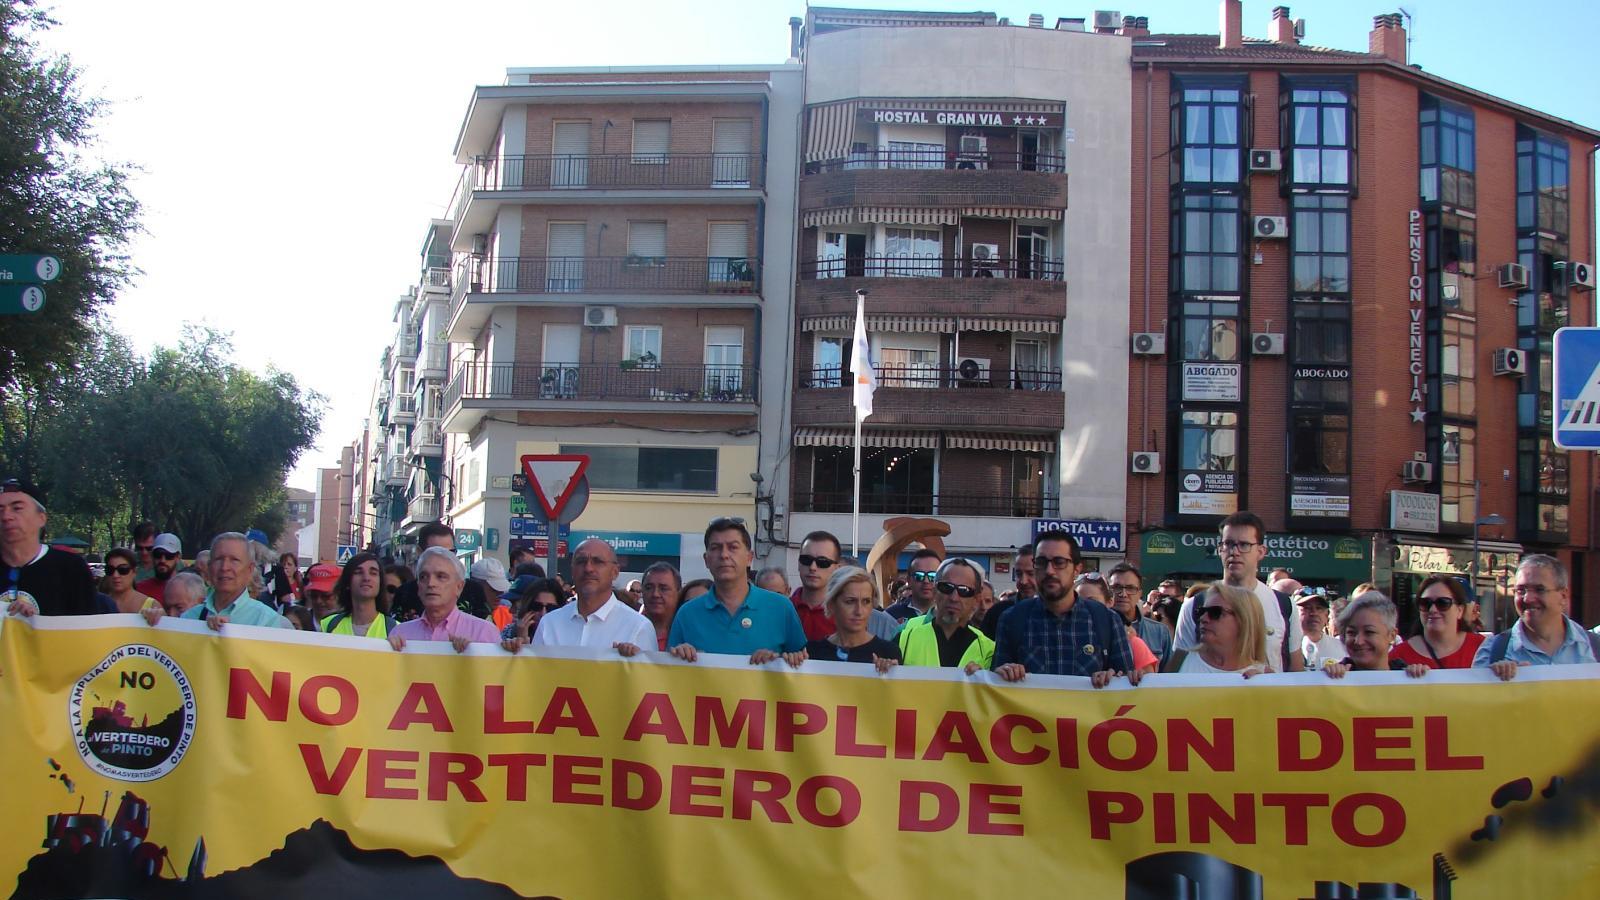 Cerca de 700 personas se movilizan contra la ampliación del vertedero de Pinto